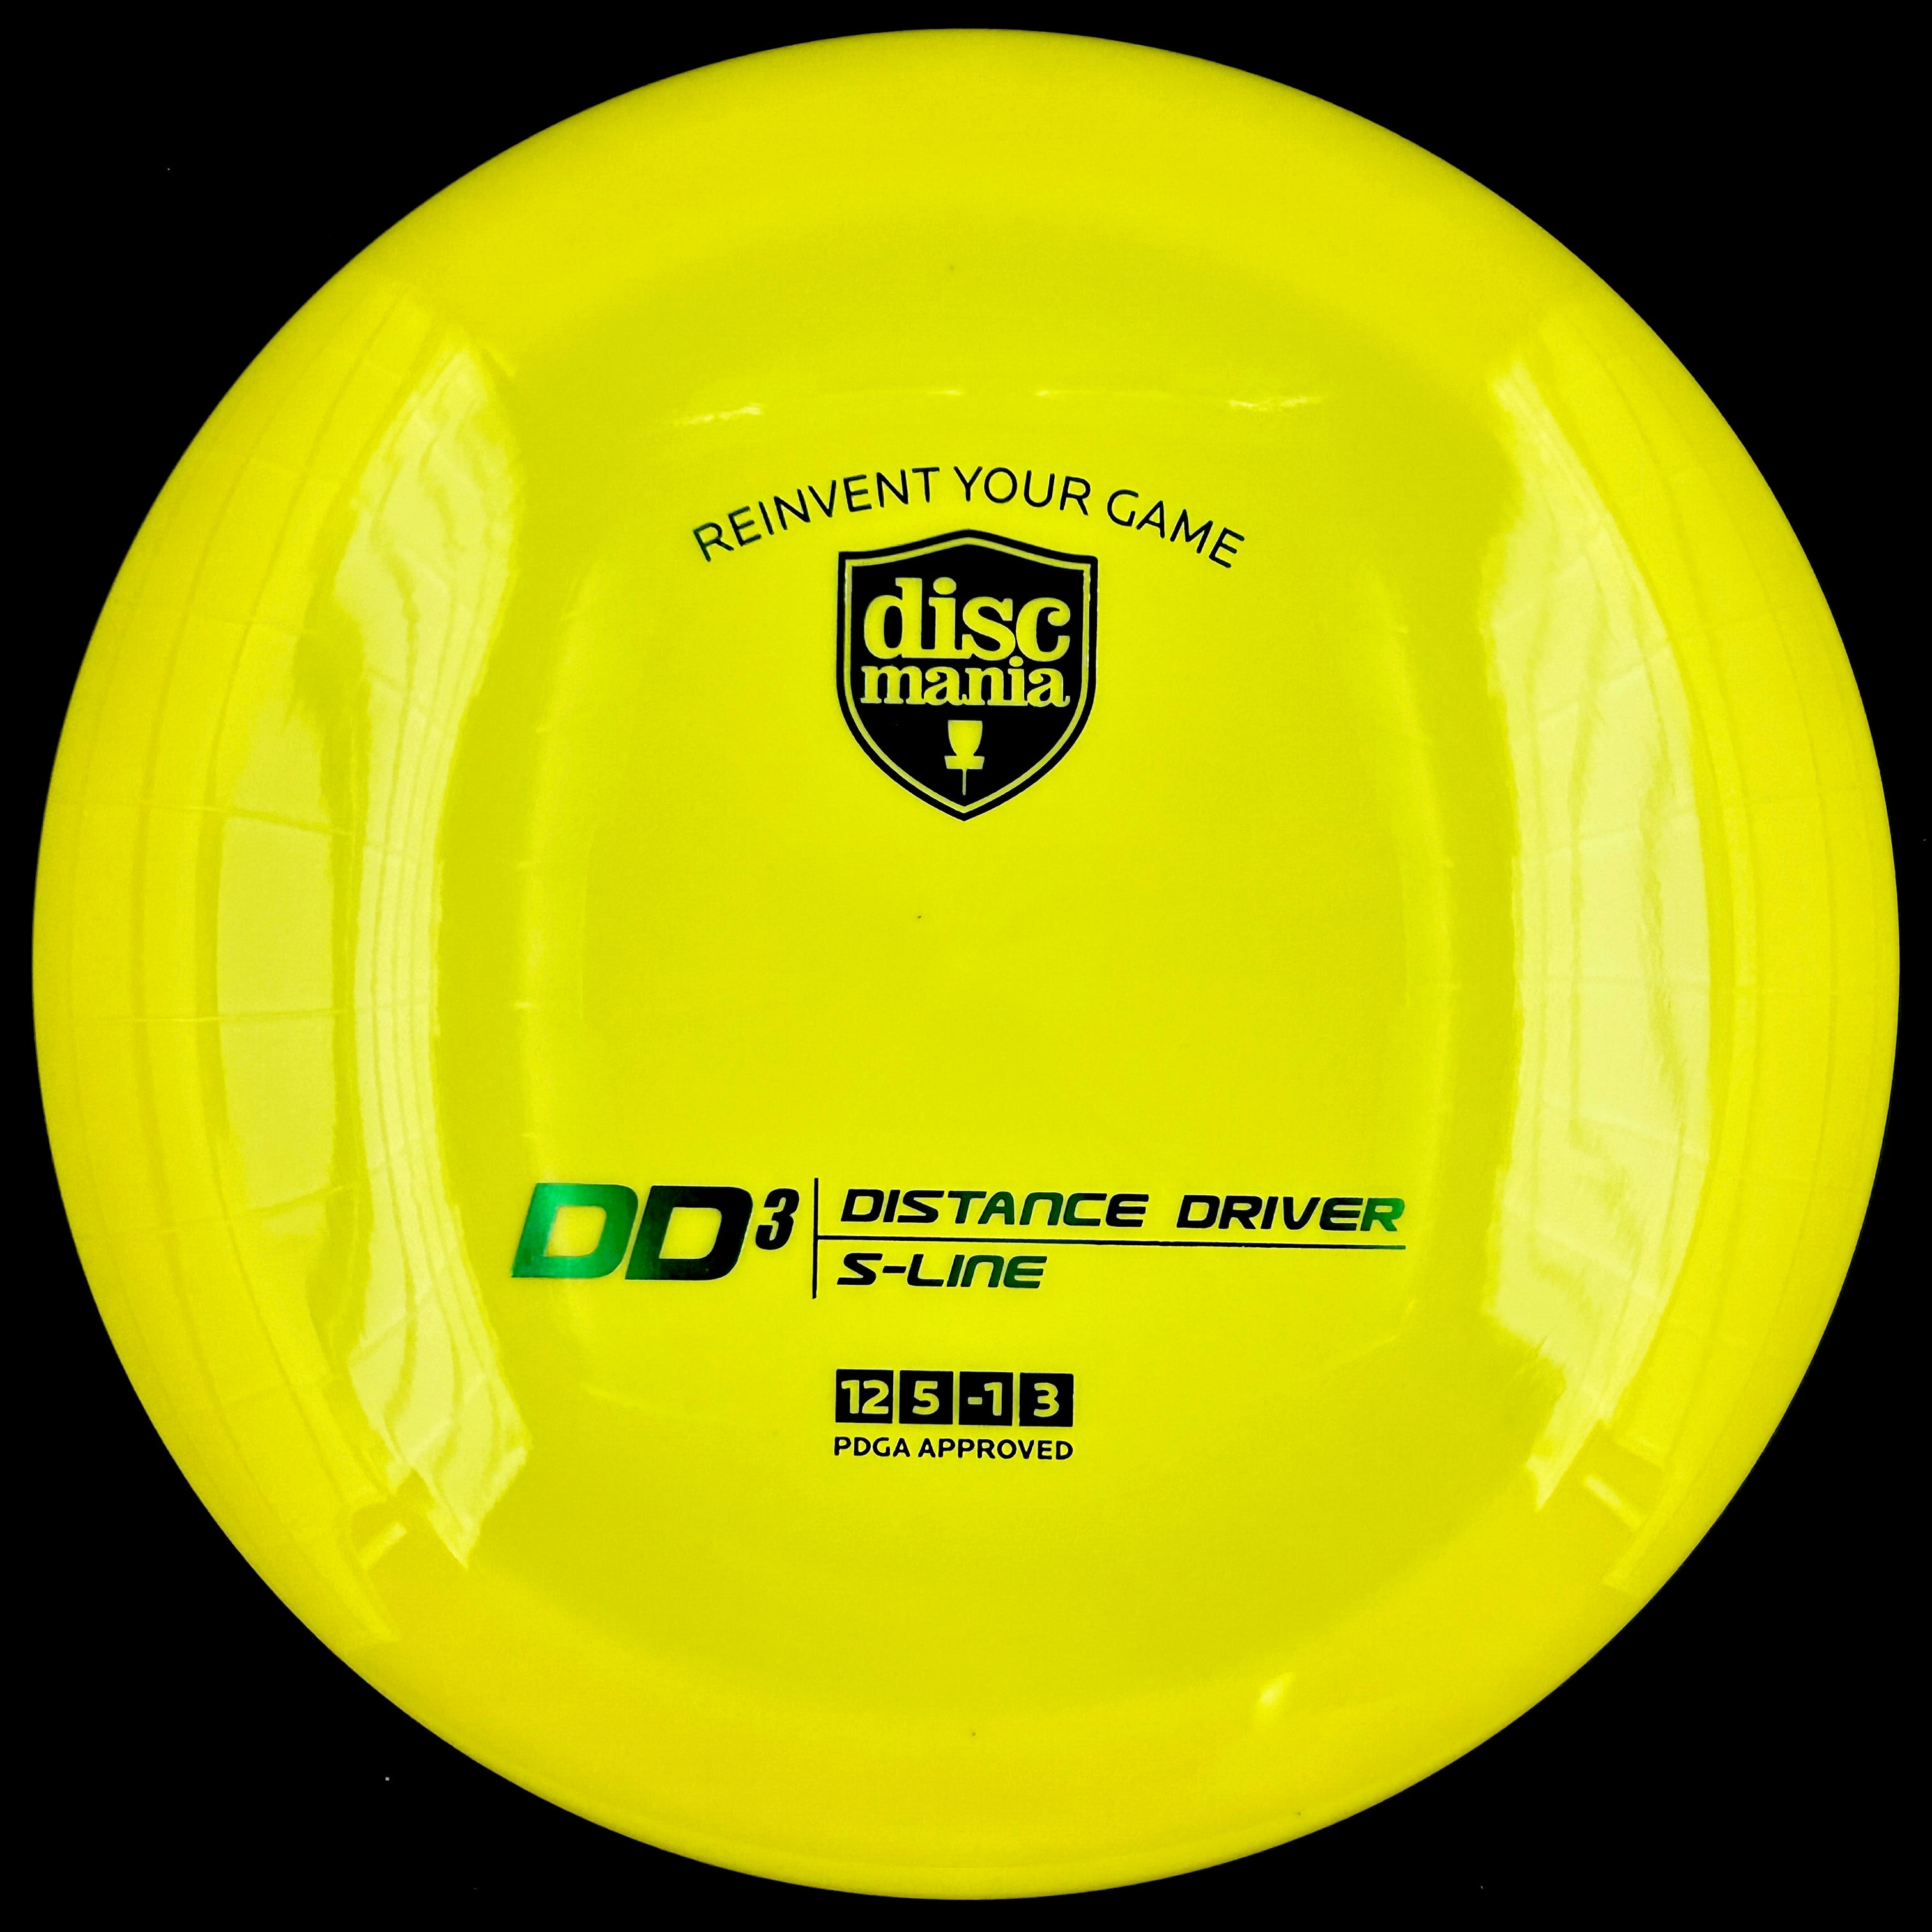 Discmania S-Line DD3 (Distance Driver)